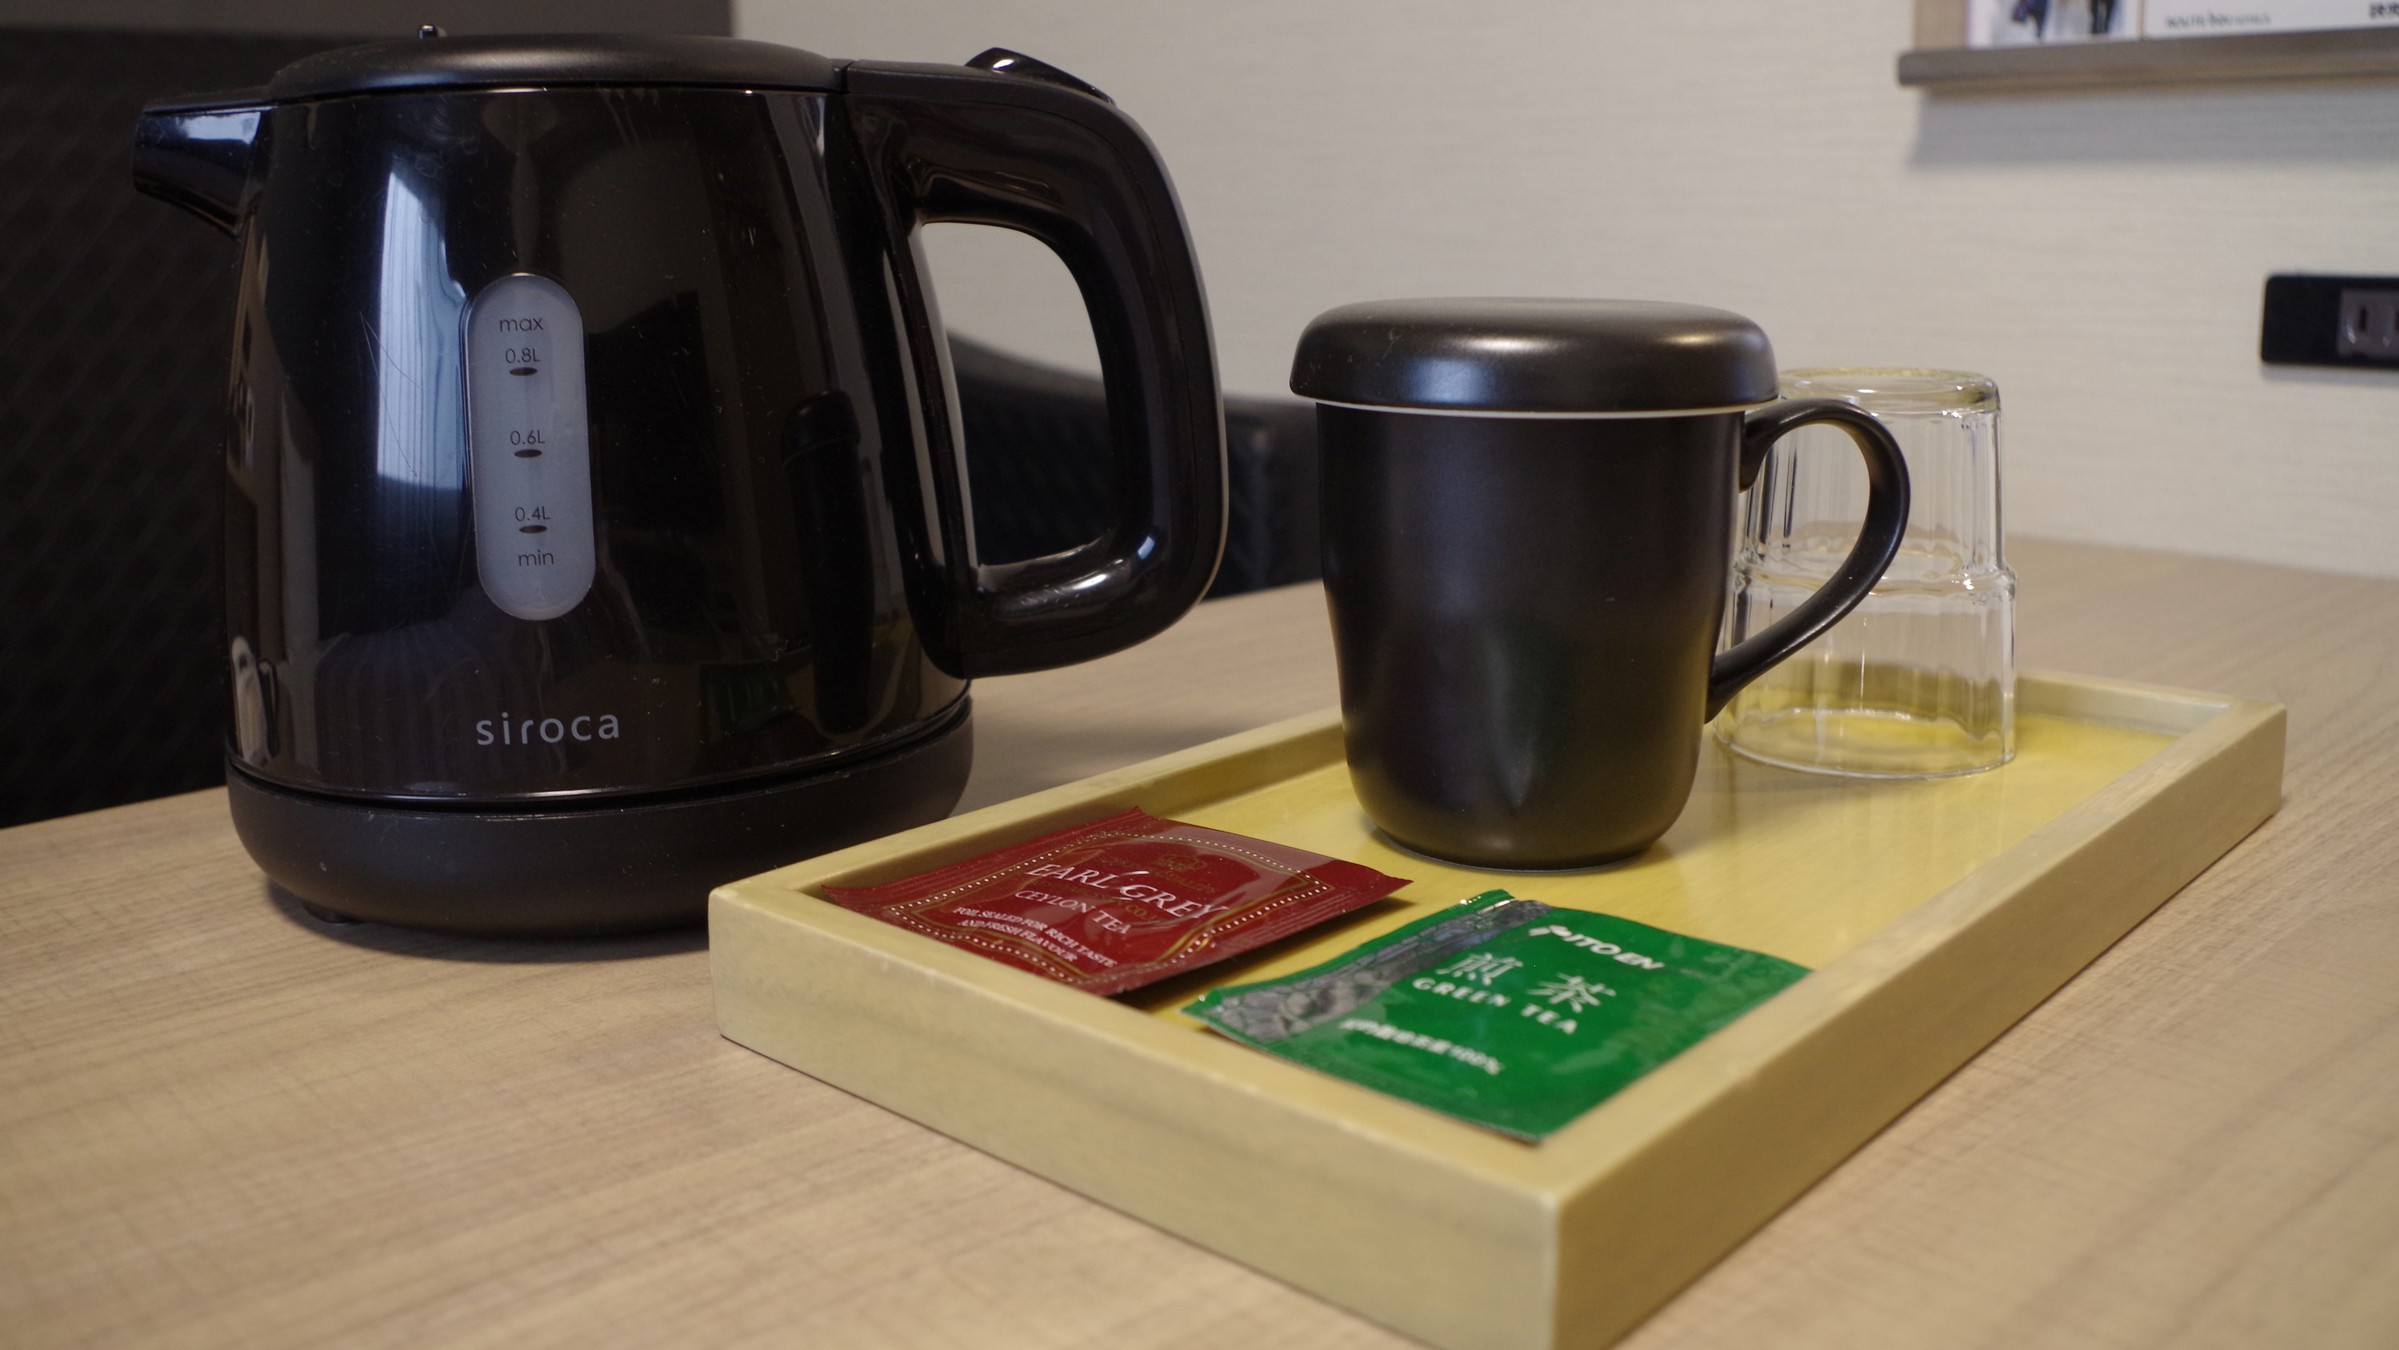 ケトル・マグカップ・紅茶・緑茶をご用意しております